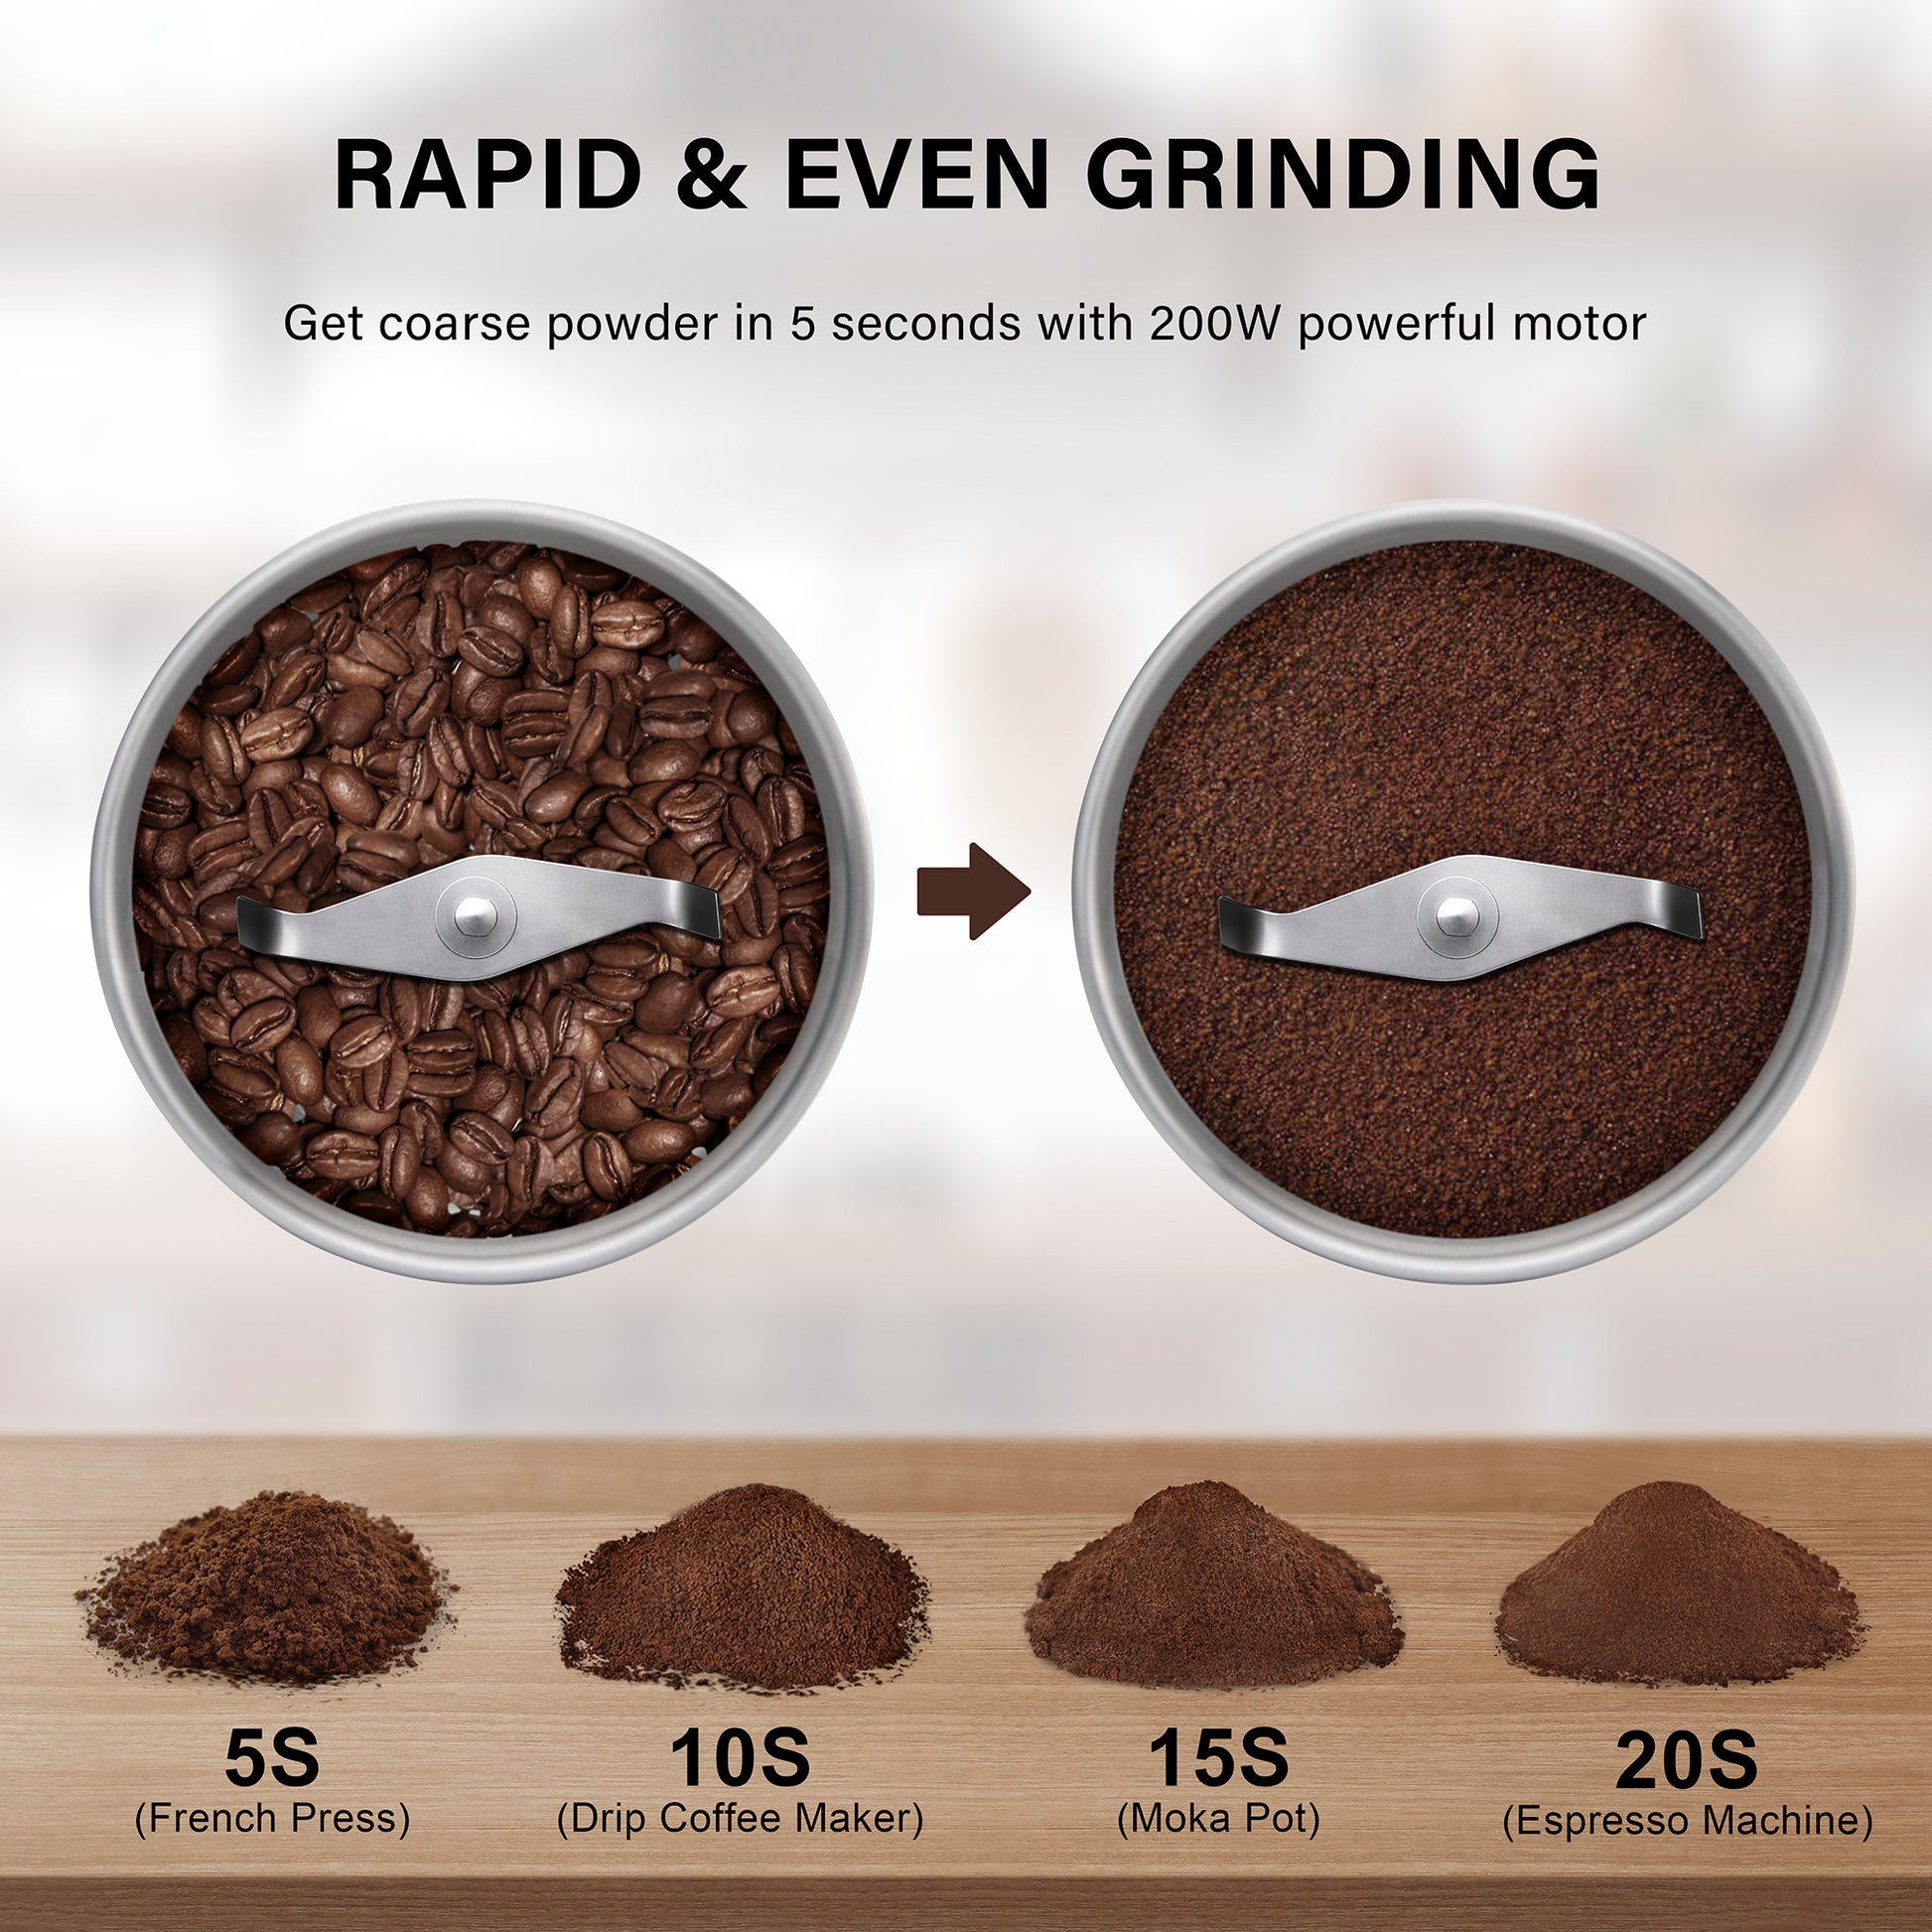 <img src="coffee grinder.jpg" alt="coffee grinding time"/>